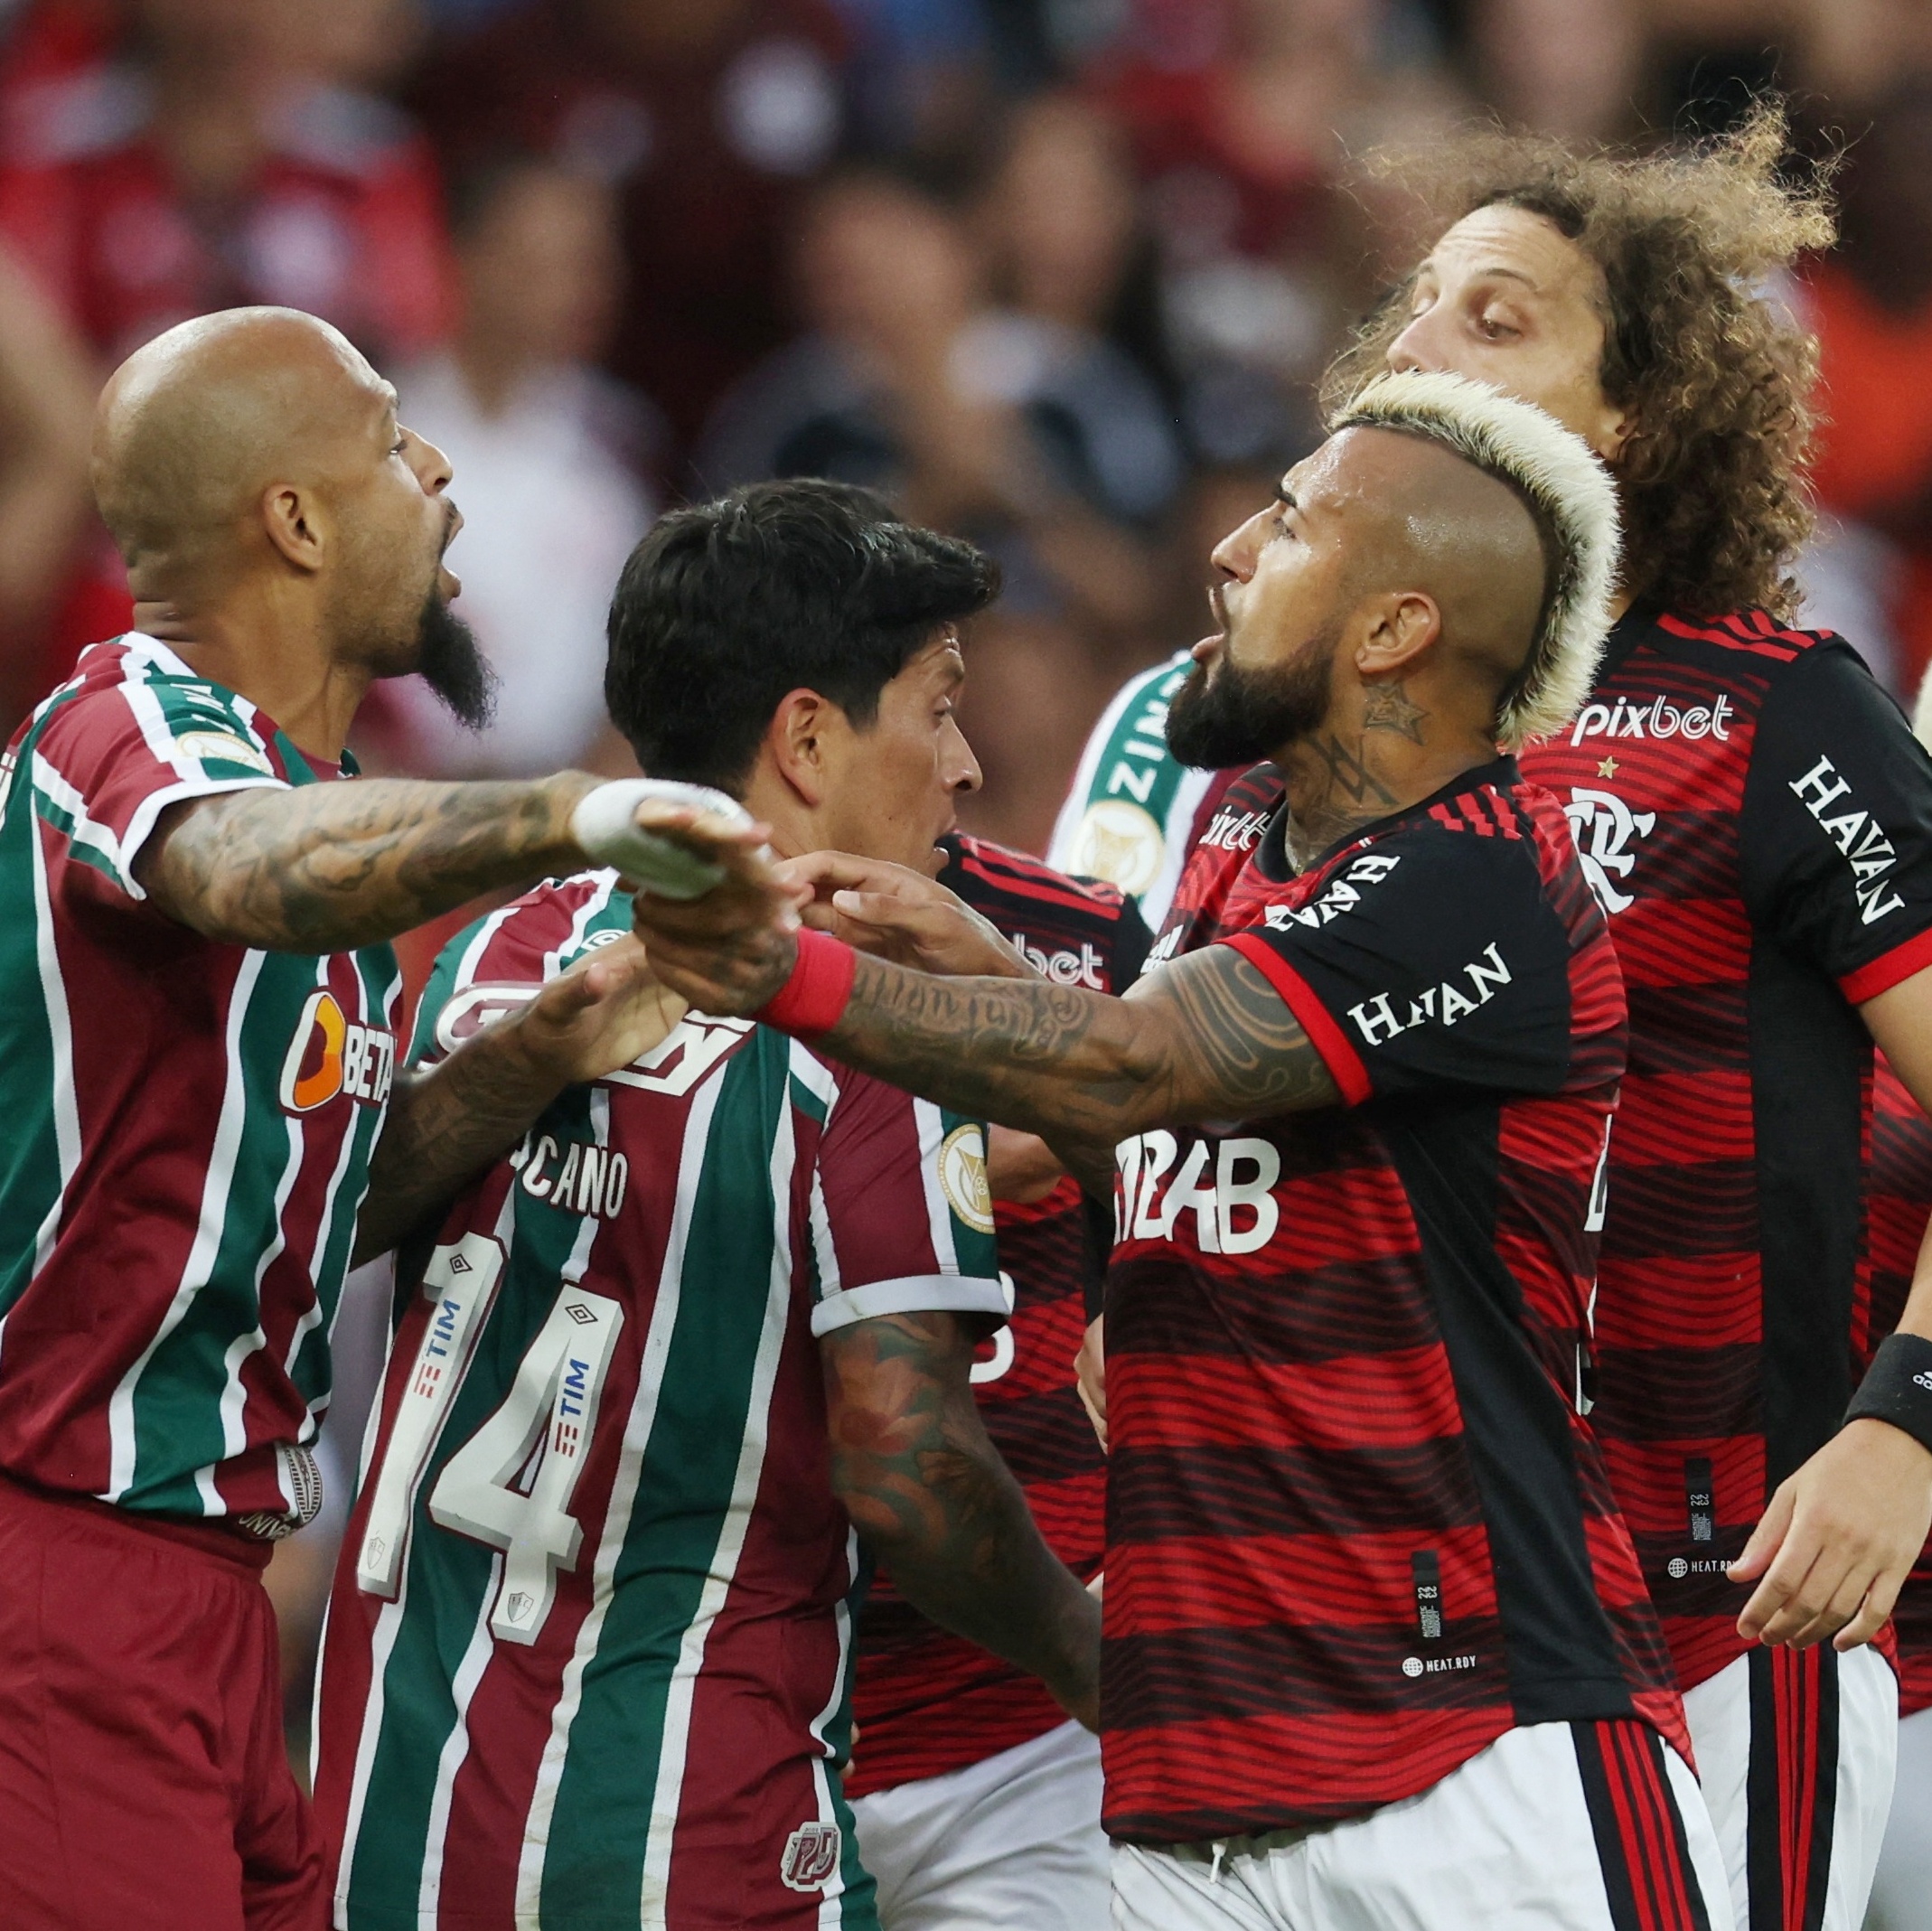 Nem o FLAnalista resiste a um Raça - Flamengo Esports